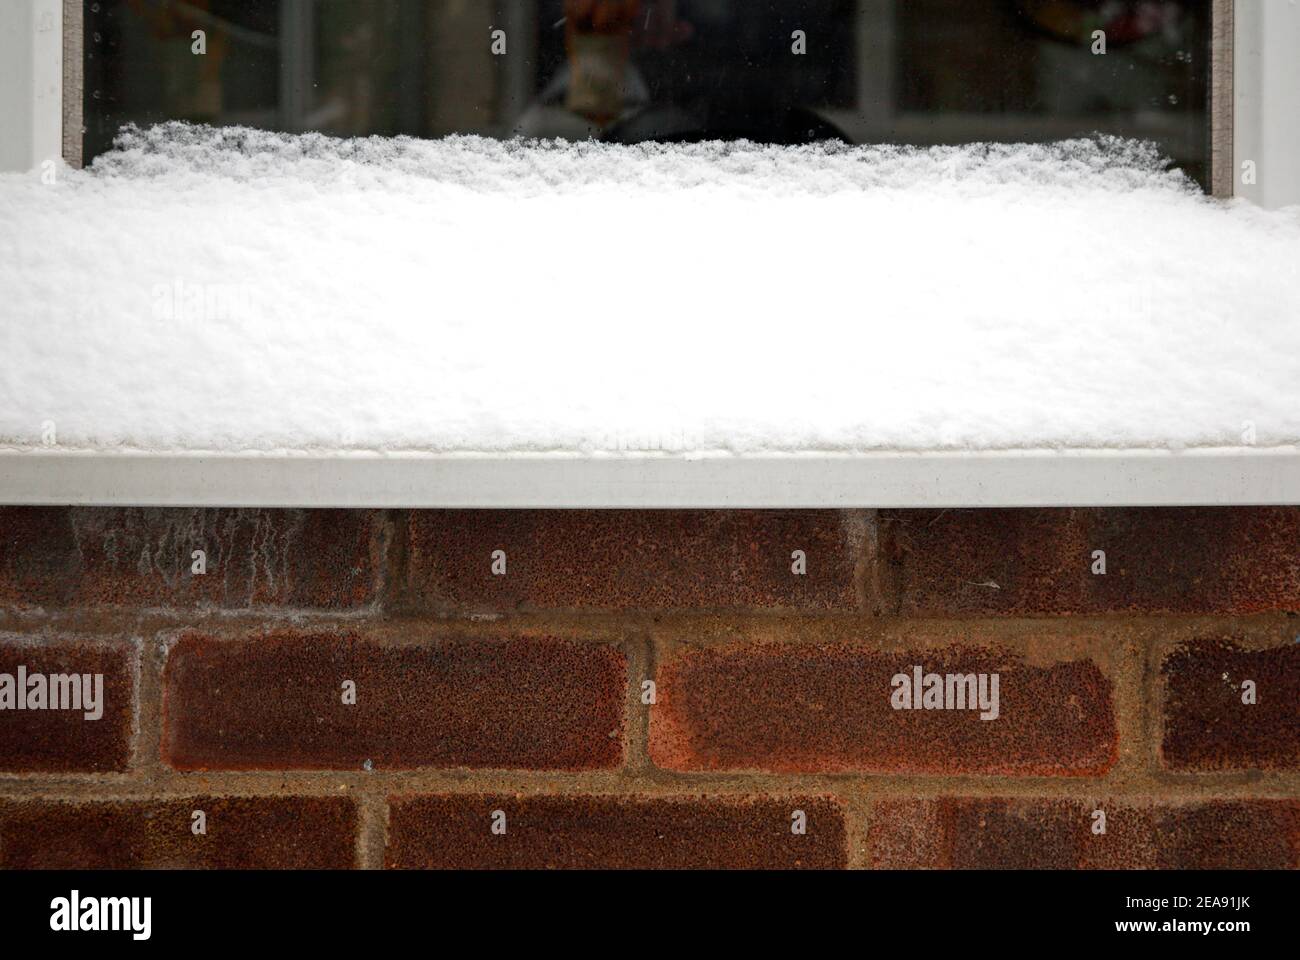 Eine Ansammlung von Schnee auf einer Fensterbank während einer Periode des kalten Wetters im Winter in Hellesdon, Norfolk, England, Vereinigtes Königreich. Stockfoto